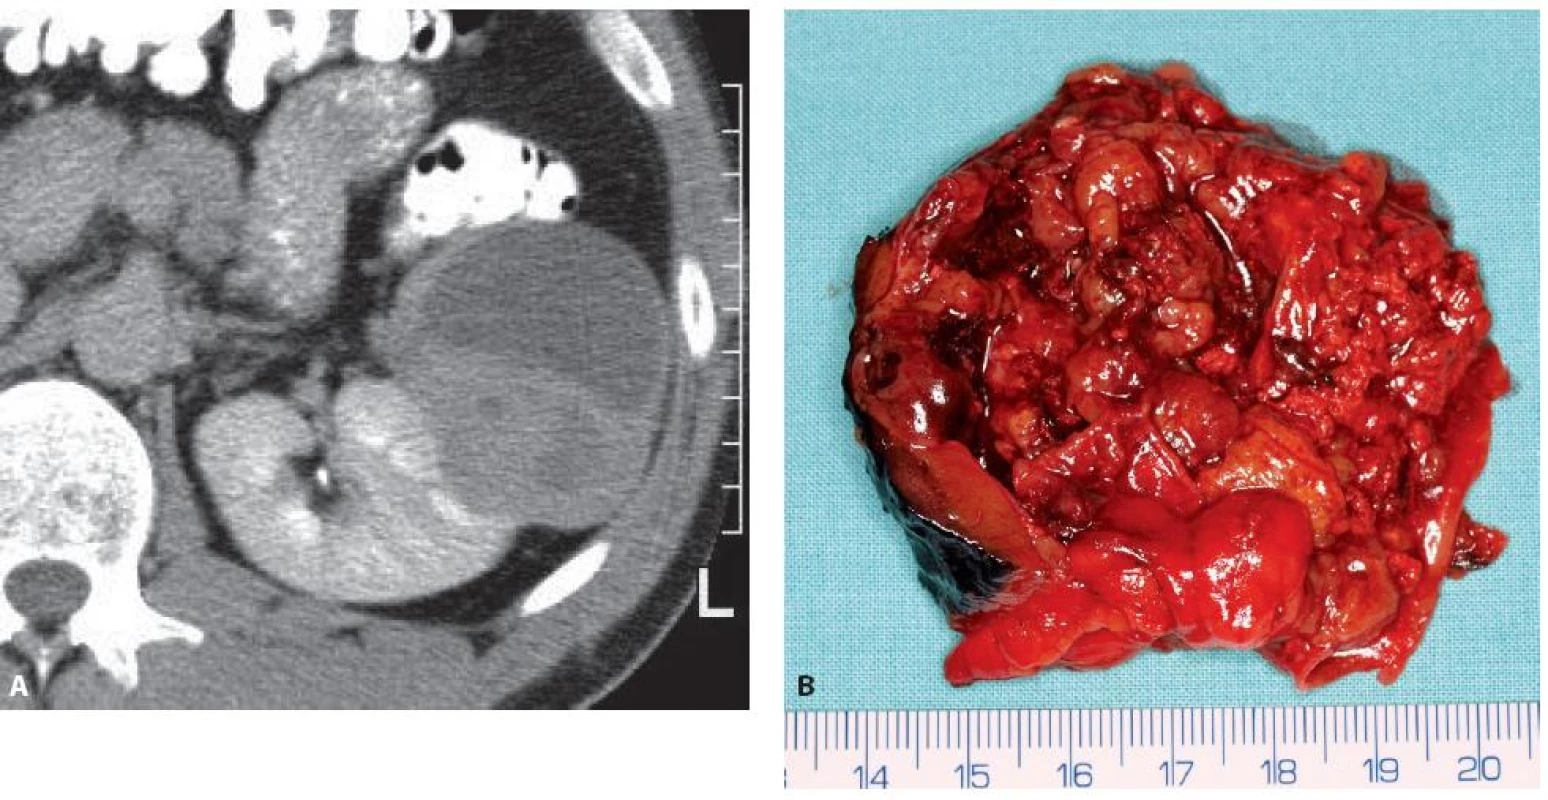 Epiteloidní angiomyolipom levé ledviny 71 mm v největším rozměru u 44letého muže. CT obraz ani operační preparát z resekce ledviny nepřipomíná klasický angiomyolipom.
Fig. 10. Epithelioid angiomyolipoma of the left kidney 71 mm in a 44-year-old man